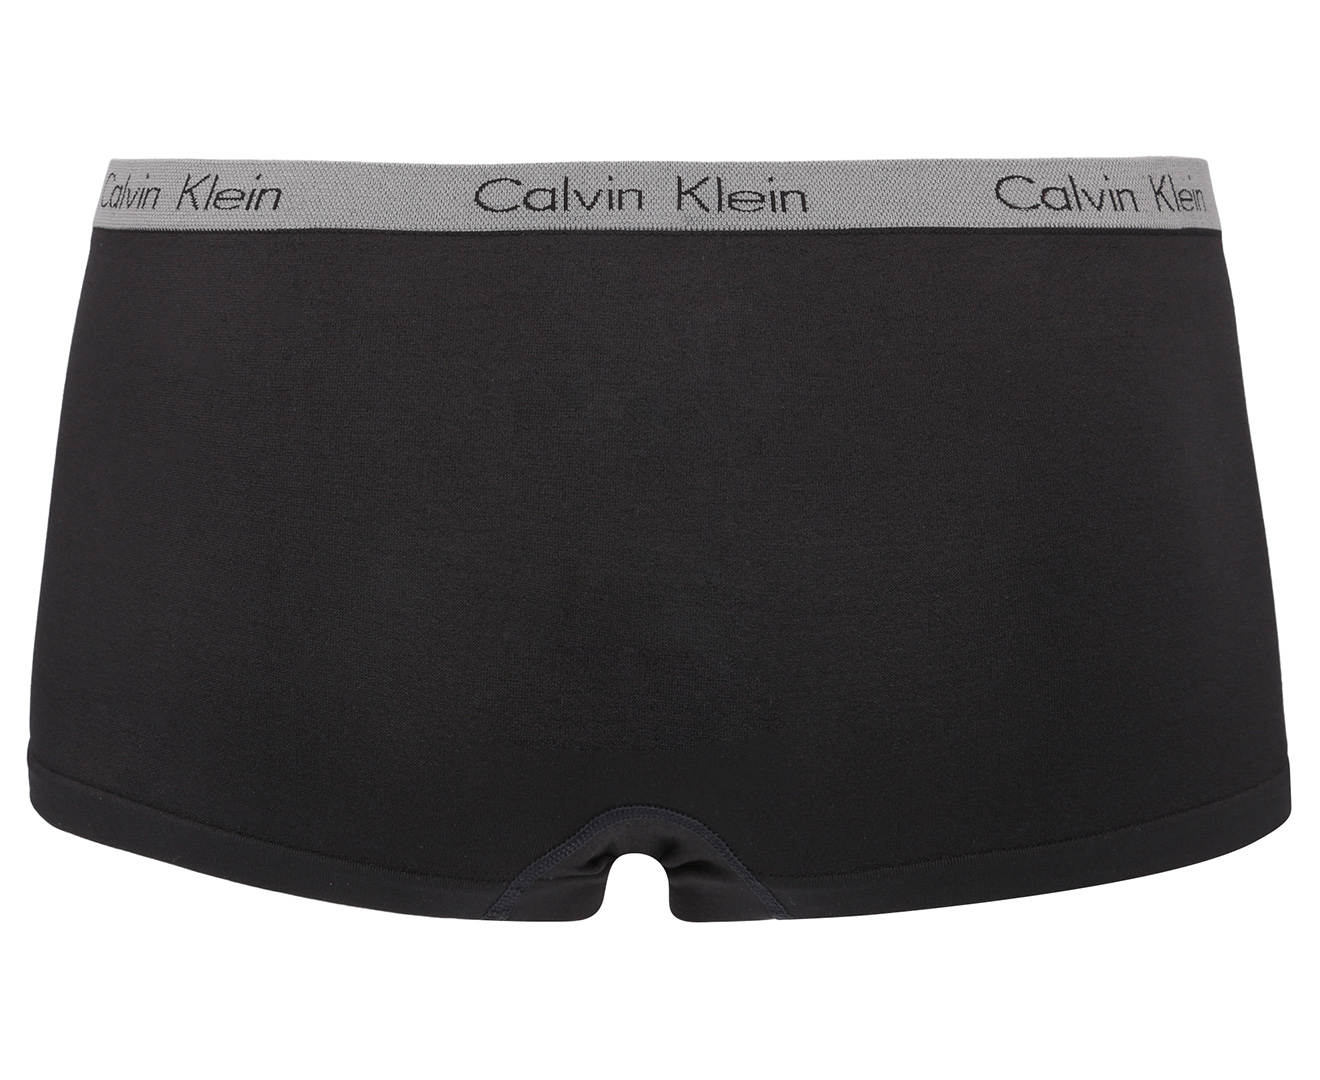 Calvin Klein Women's Eclipse Boyshorts 2-Pack - White/Black | Catch.co.nz